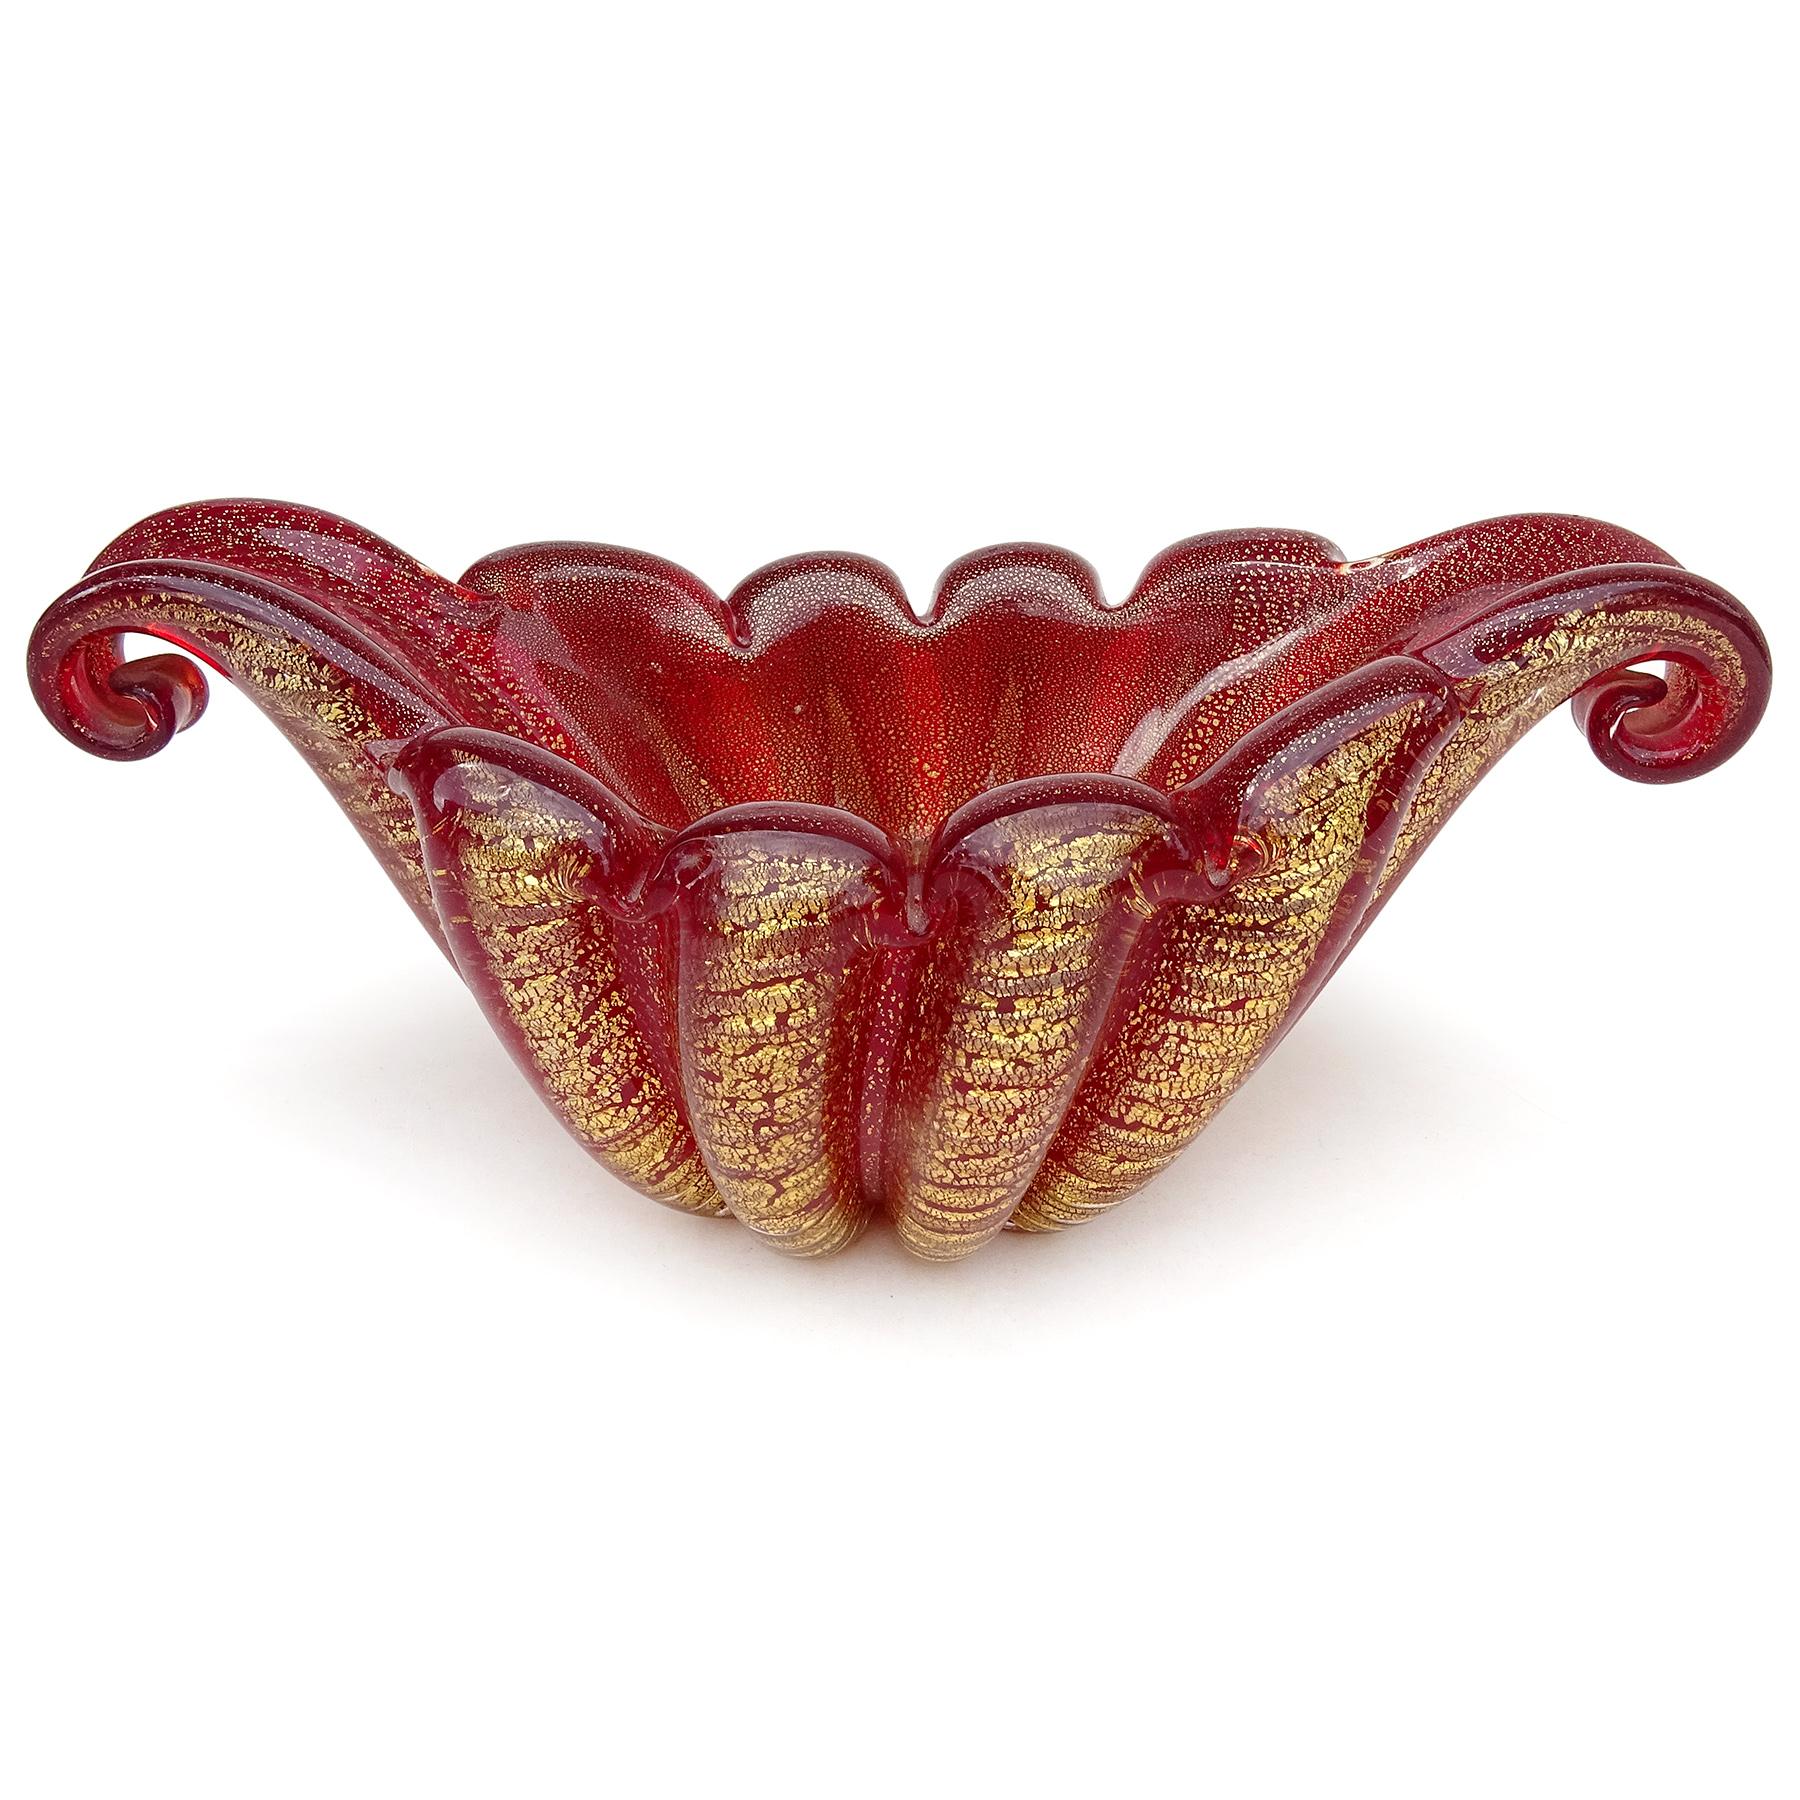 Schöne Vintage Murano mundgeblasen tief rot und Goldflecken italienischen Kunstglas Gondel geformt ausgestelltem Rand dekorative Schale. Dokumentiert für den Designer Ercole Barovier, für die Firma Barovier e Toso. Sie wird in der Cordonato D'